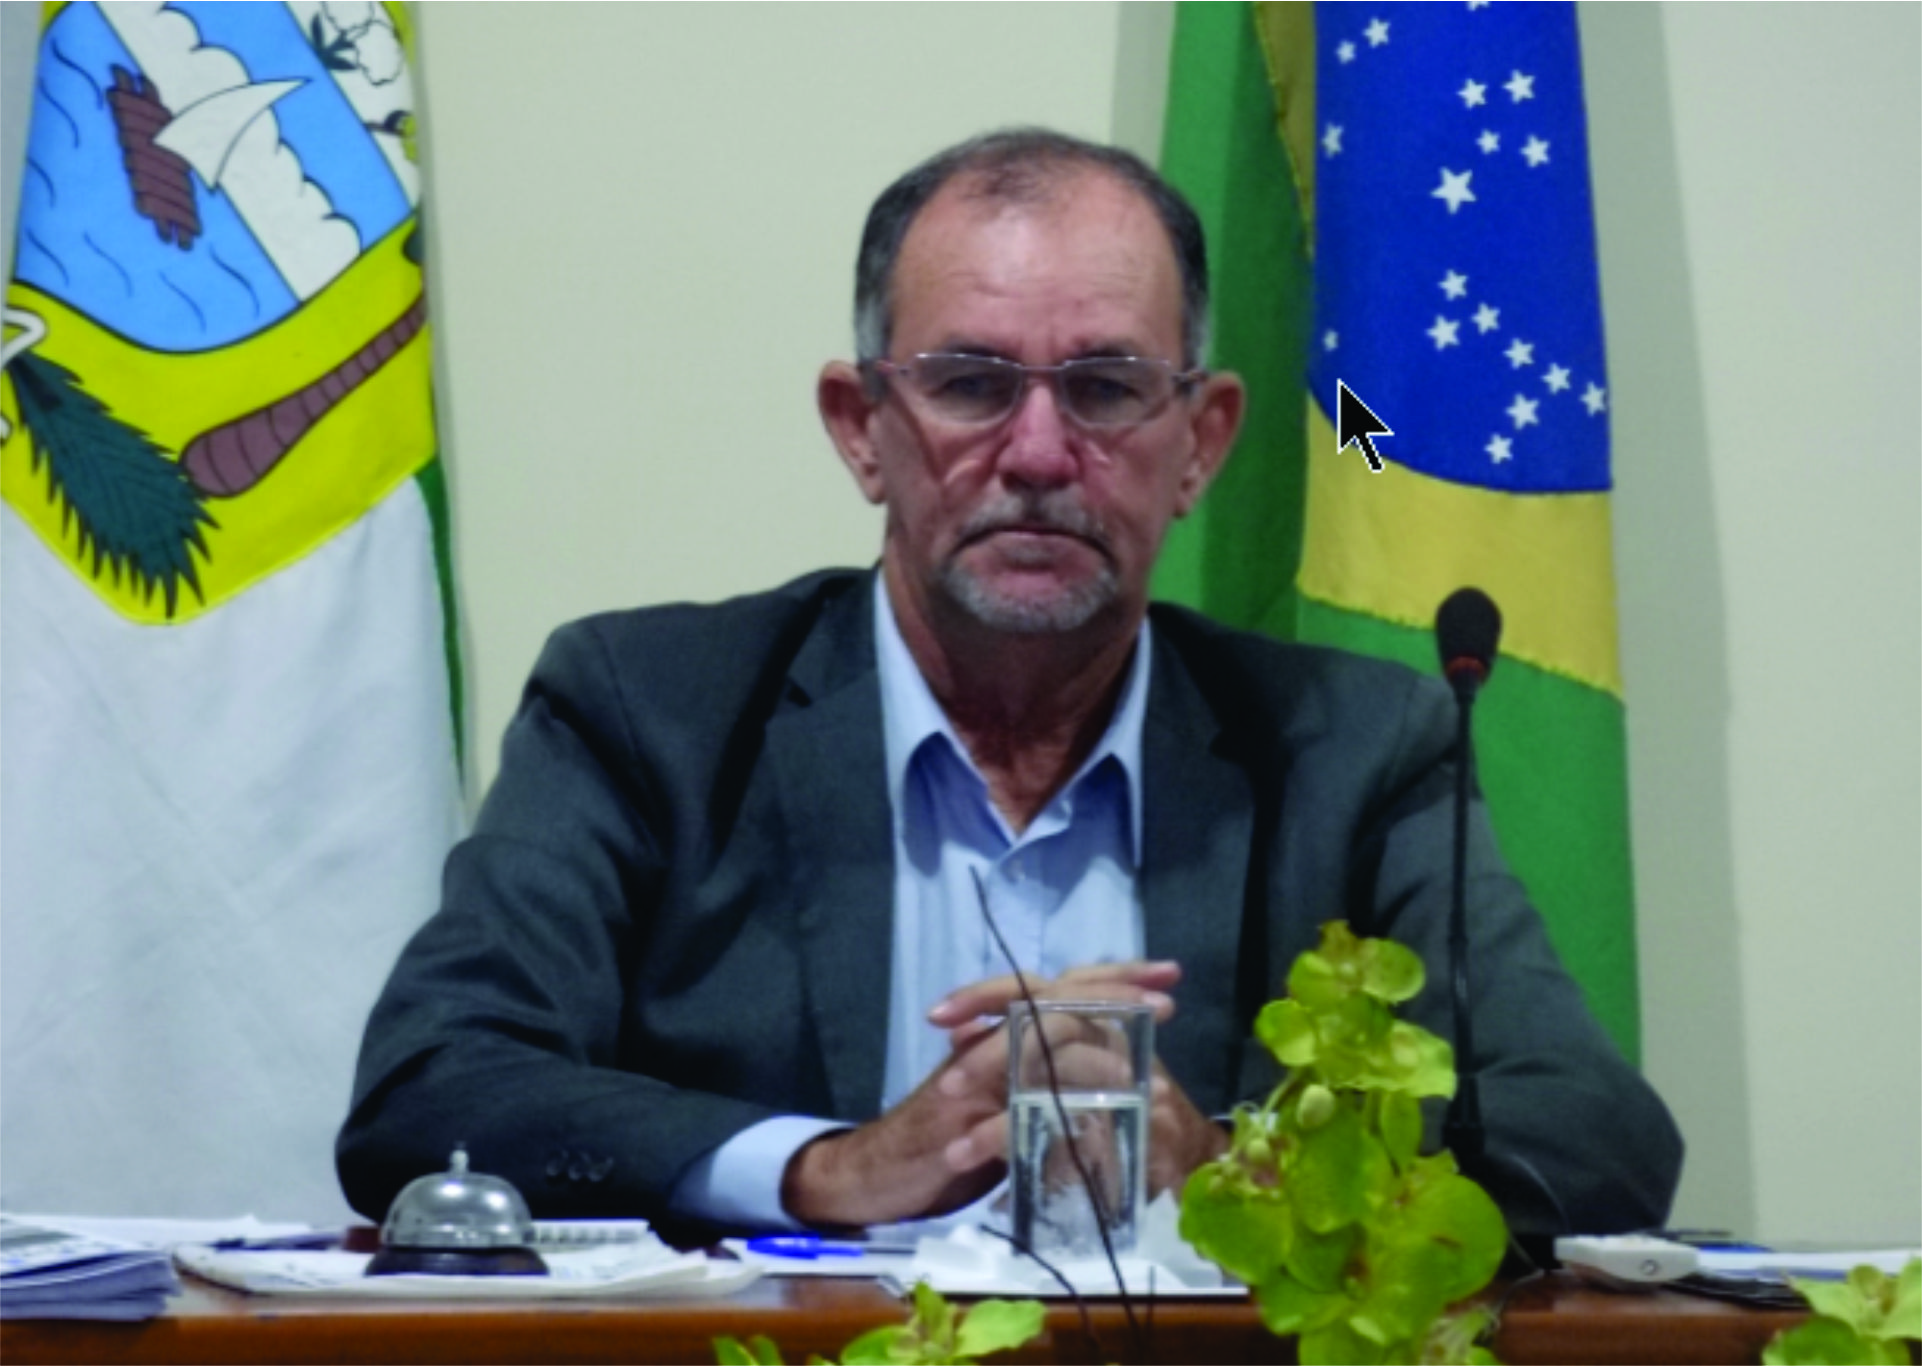 Presidente da Câmara de Vereadores Crizaldo Meira solicita a institucionalização do cântico do Hino Nacional Brasileiro nas entidades educacionais